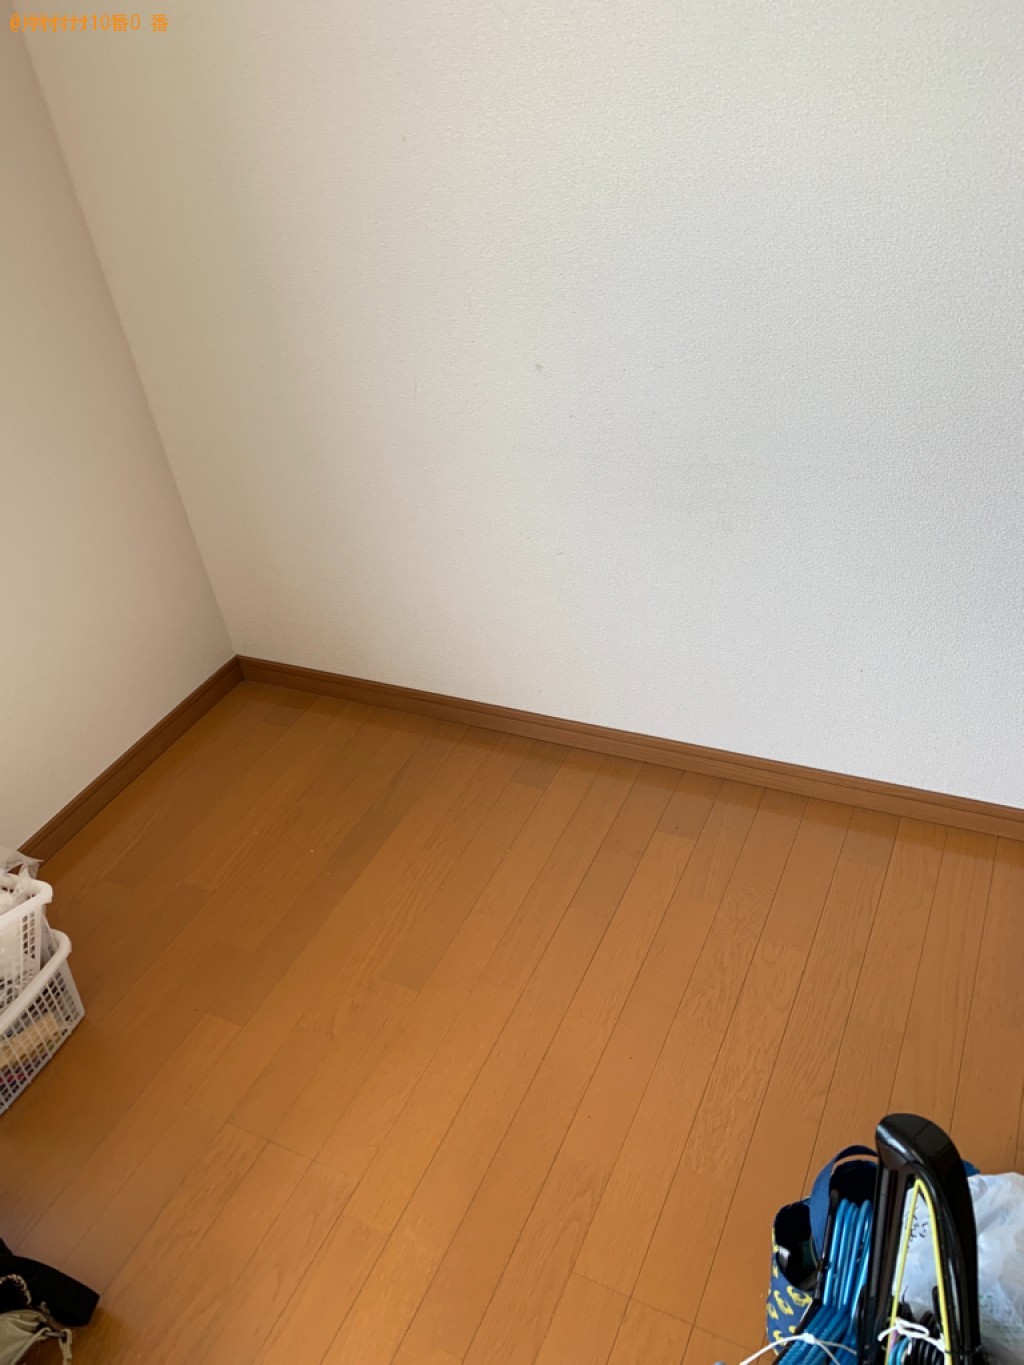 【鳥取市湖山町】家具・家電などの出張不用品回収・処分ご依頼